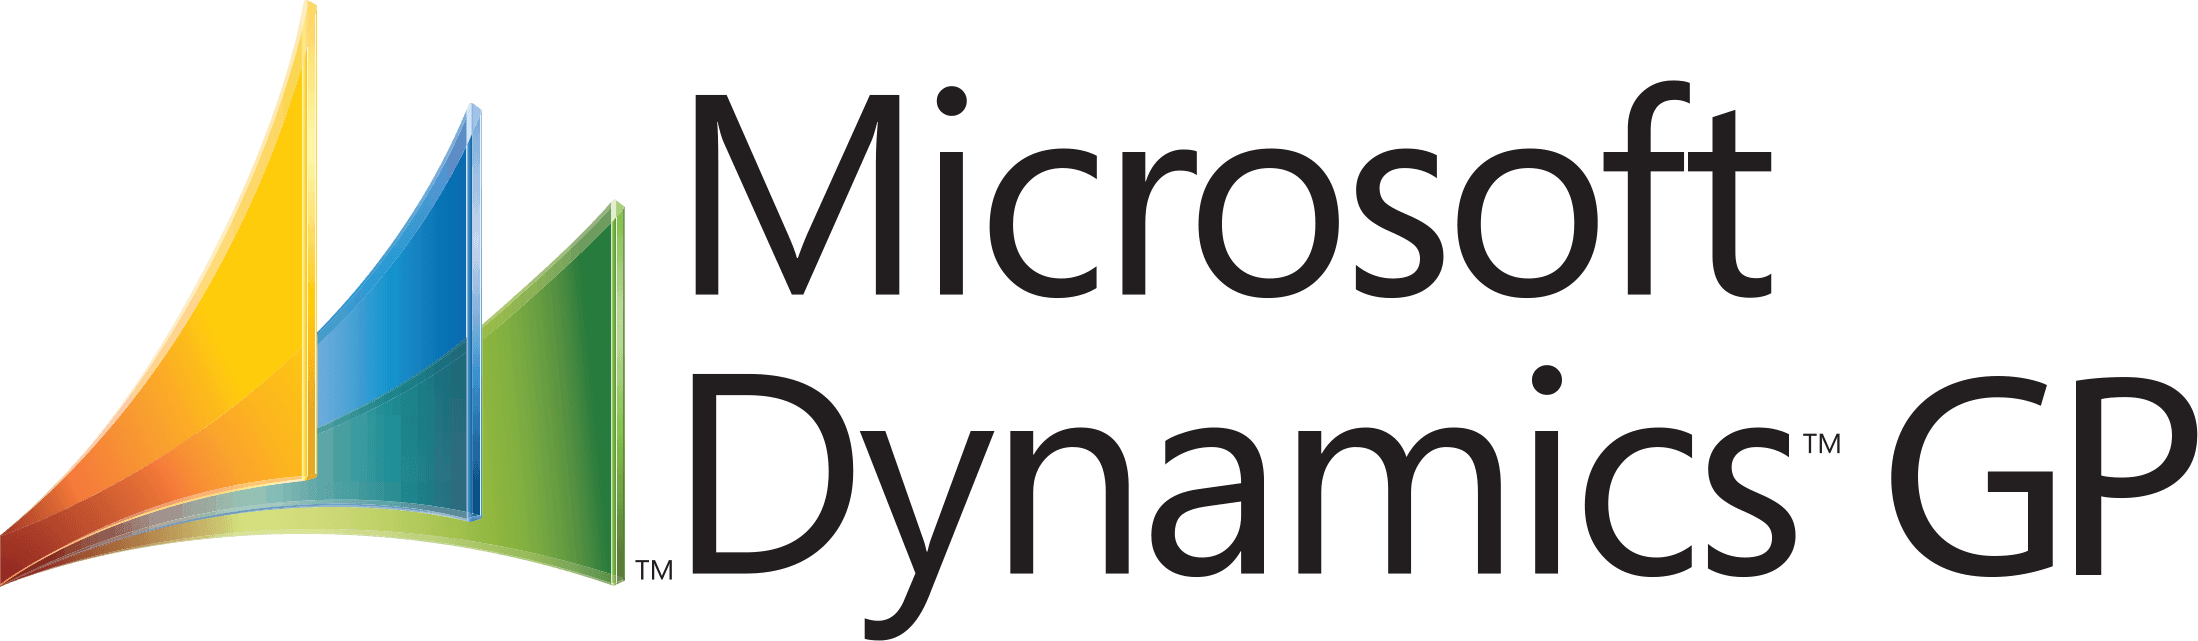 MS Dynamics Logo - Ms Dynamics Gp Logo